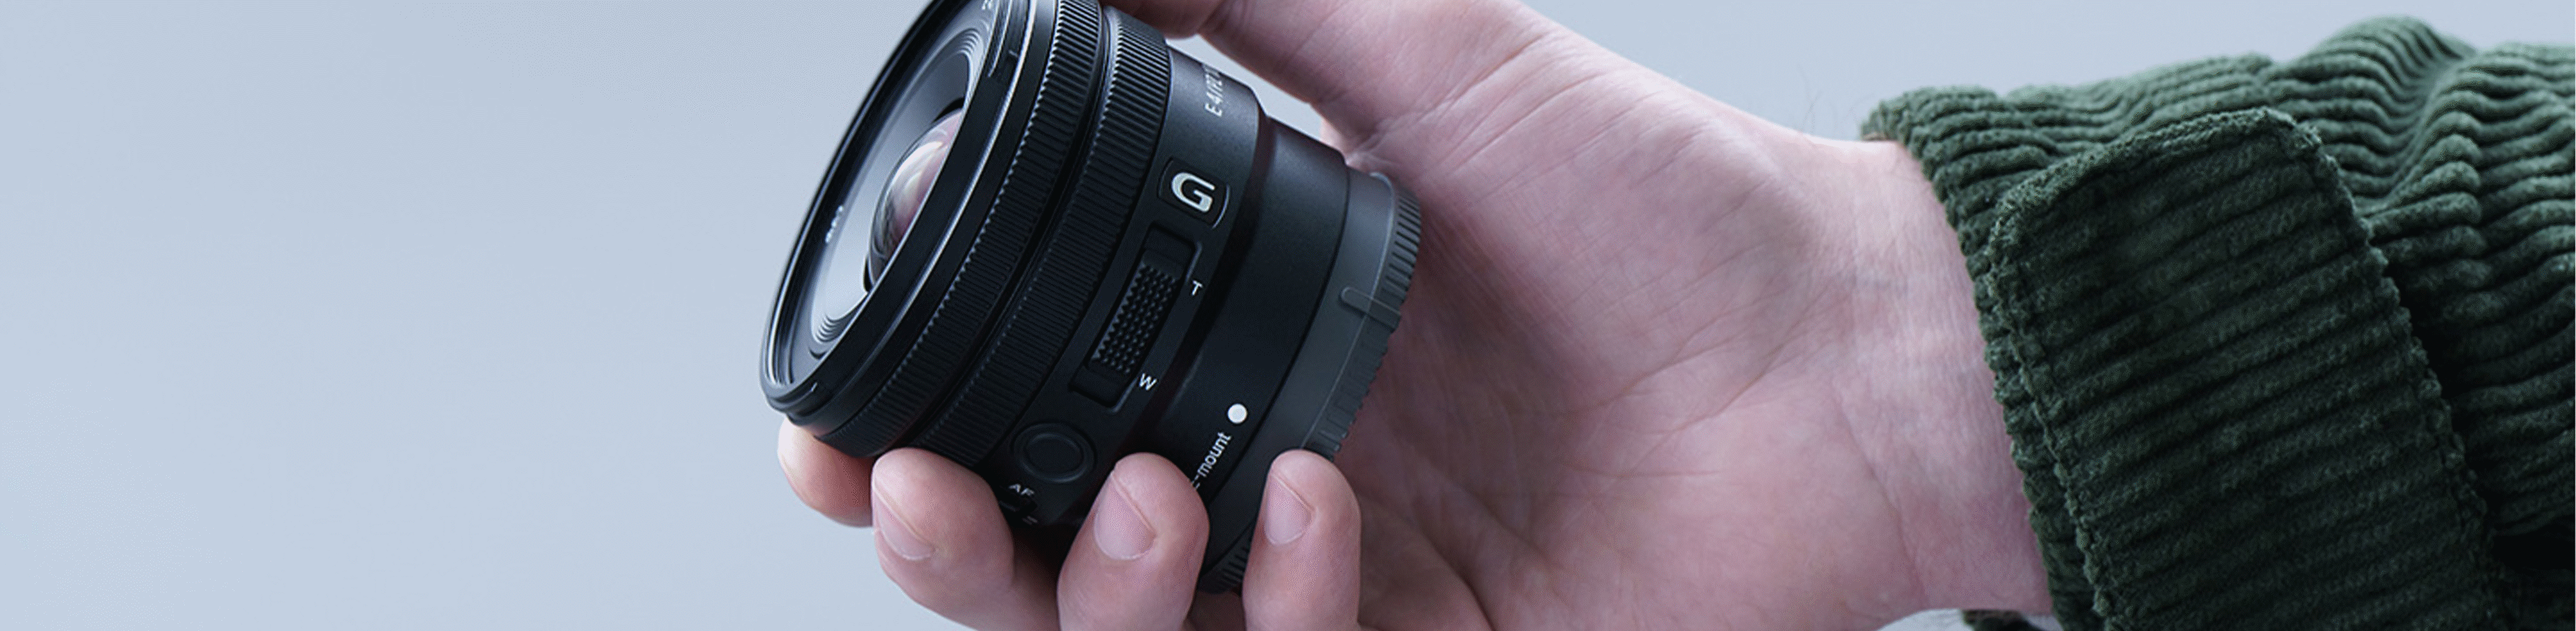 Imagen de una mano sosteniendo la E PZ 10-20 mm F4 G que es lo suficientemente pequeña para caber en ella